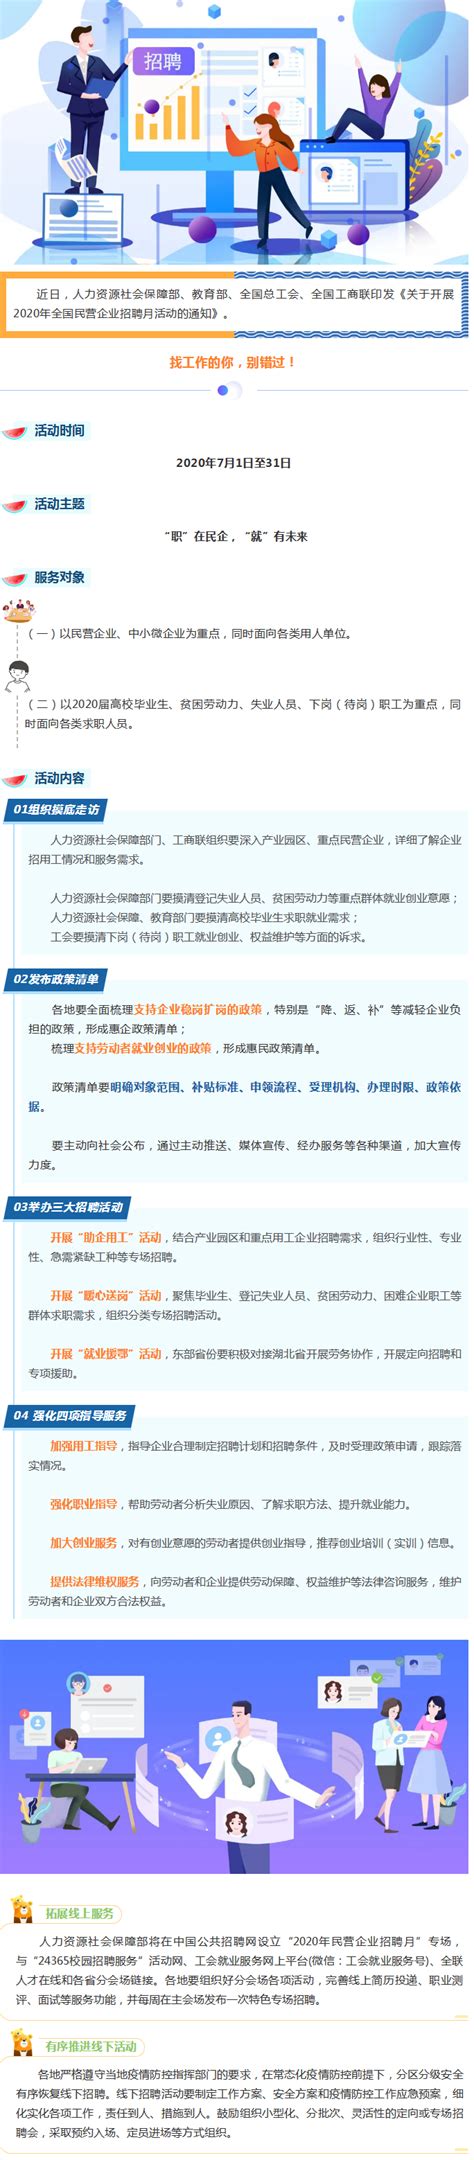 [全国]2020年中国农业银行总行校园招聘笔试通知_银行招聘网